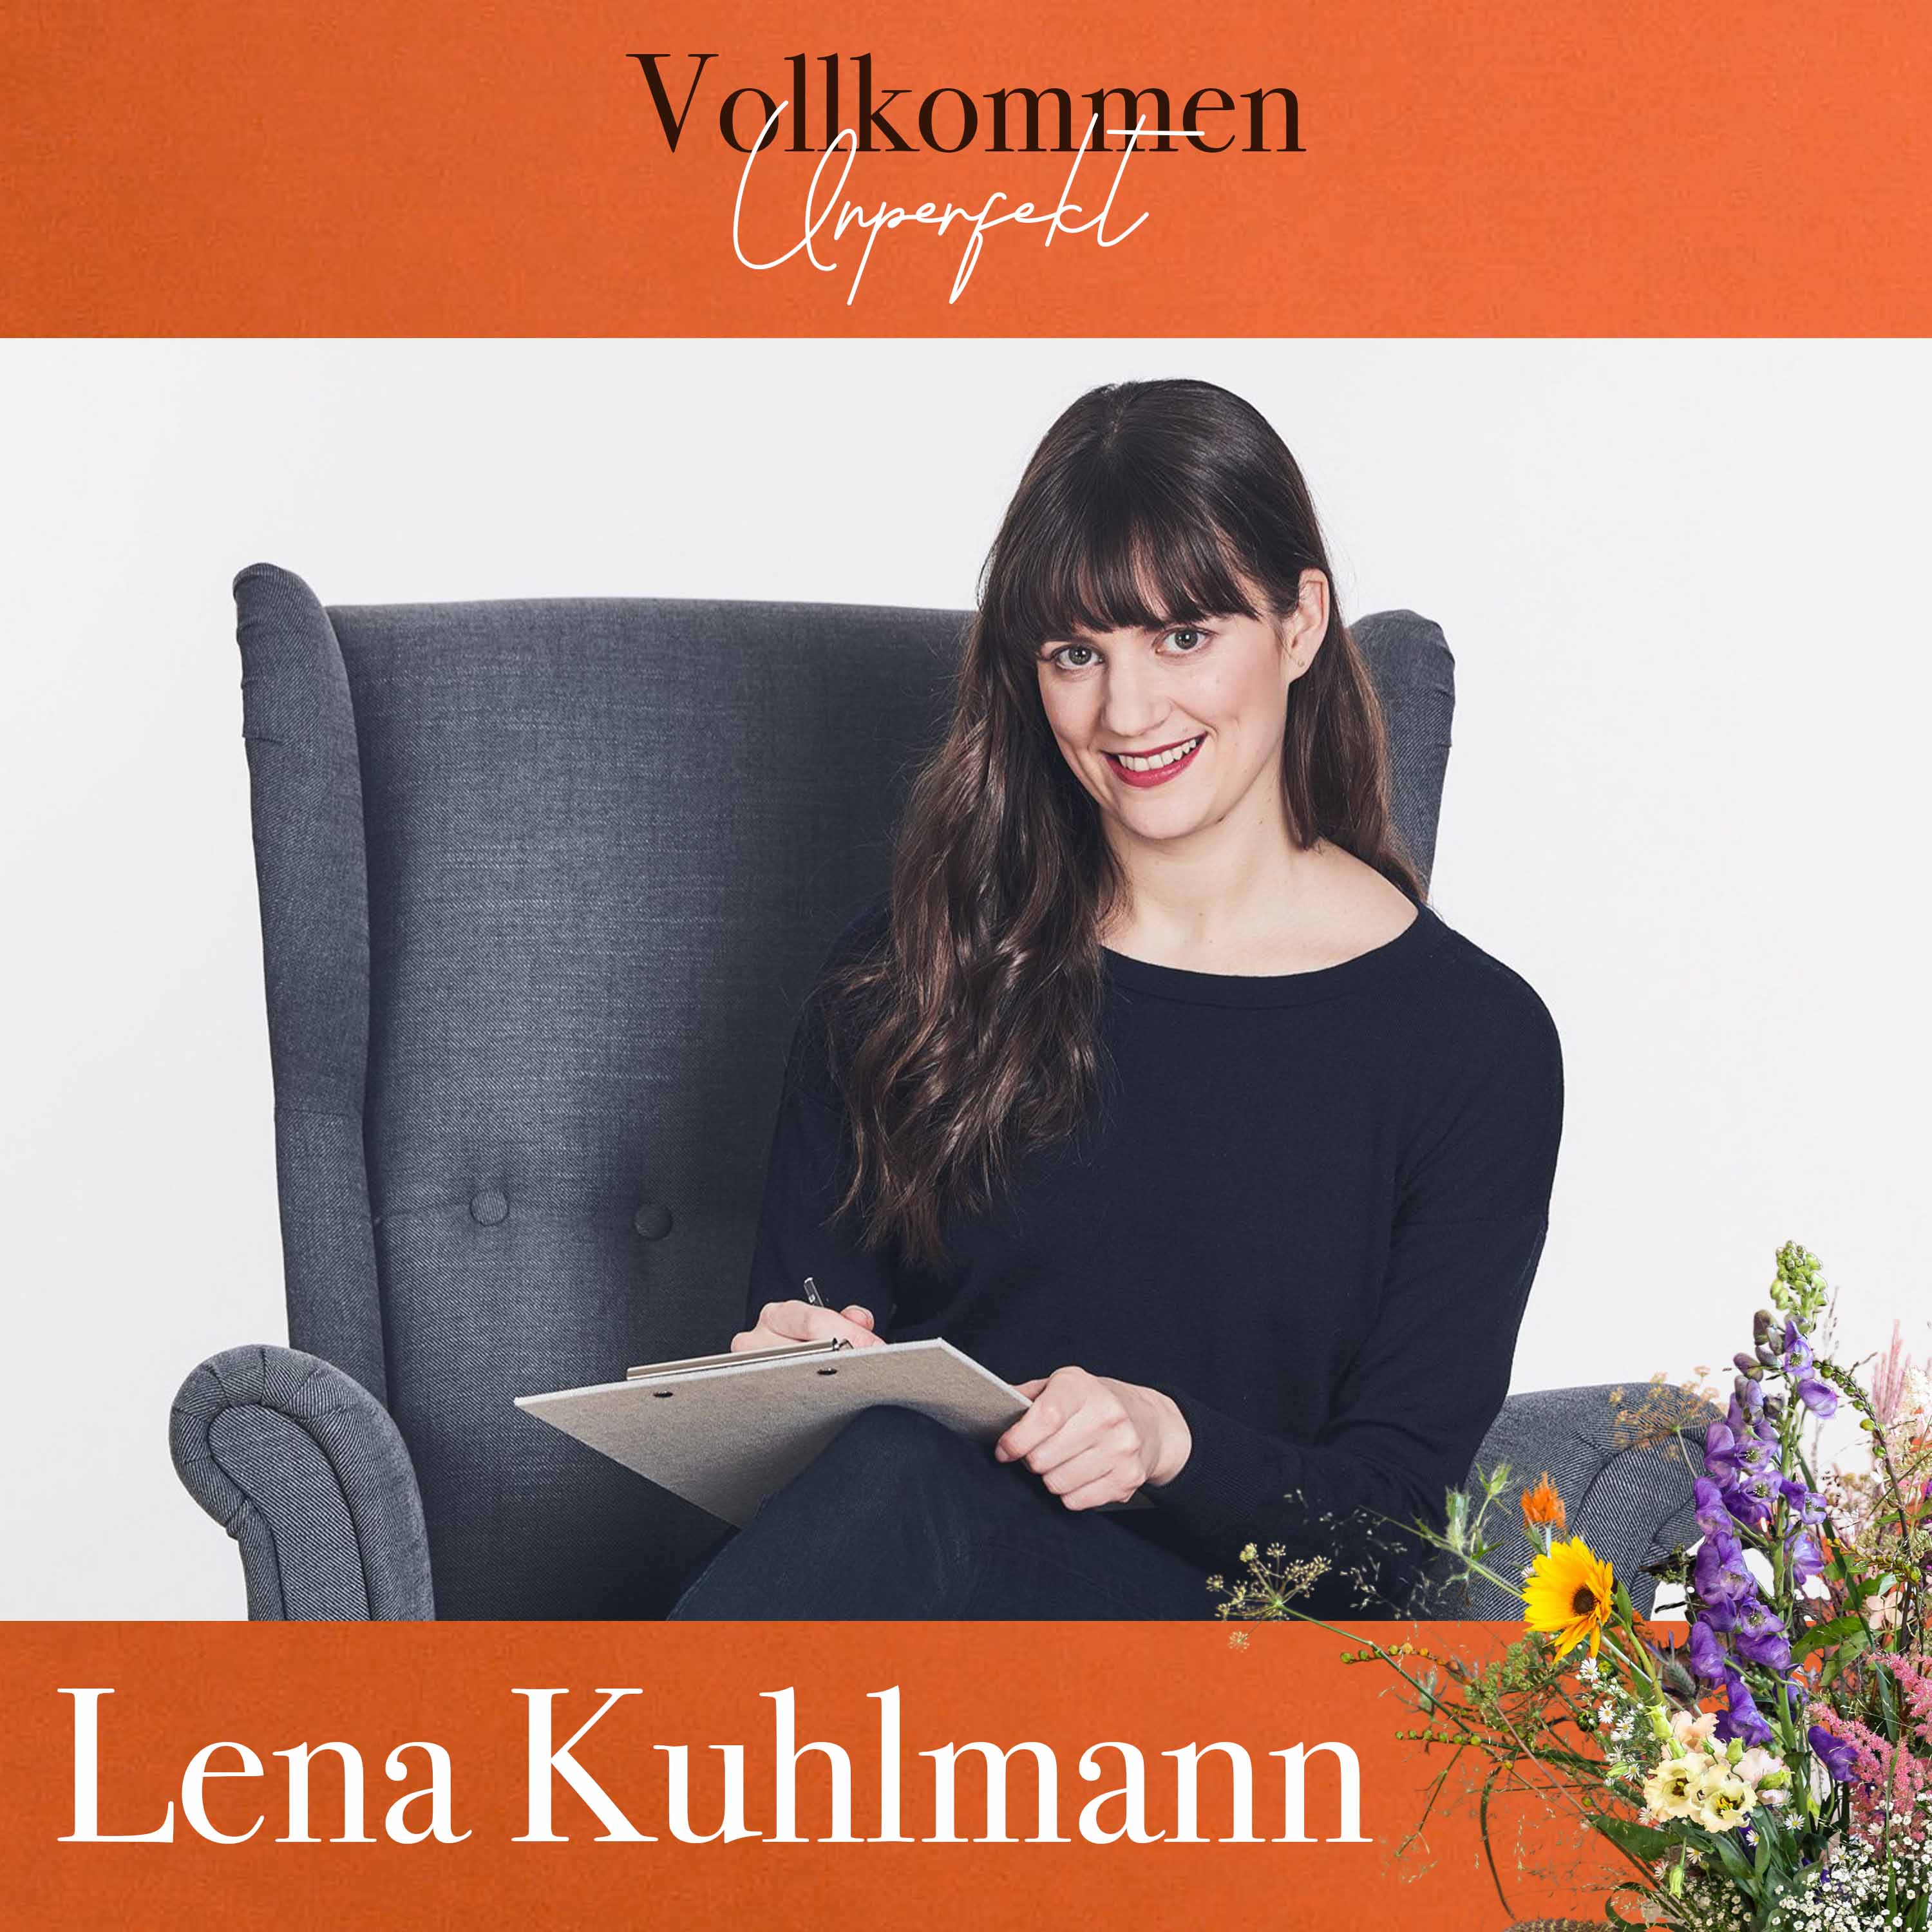 Lena, macht Social Media einsam?